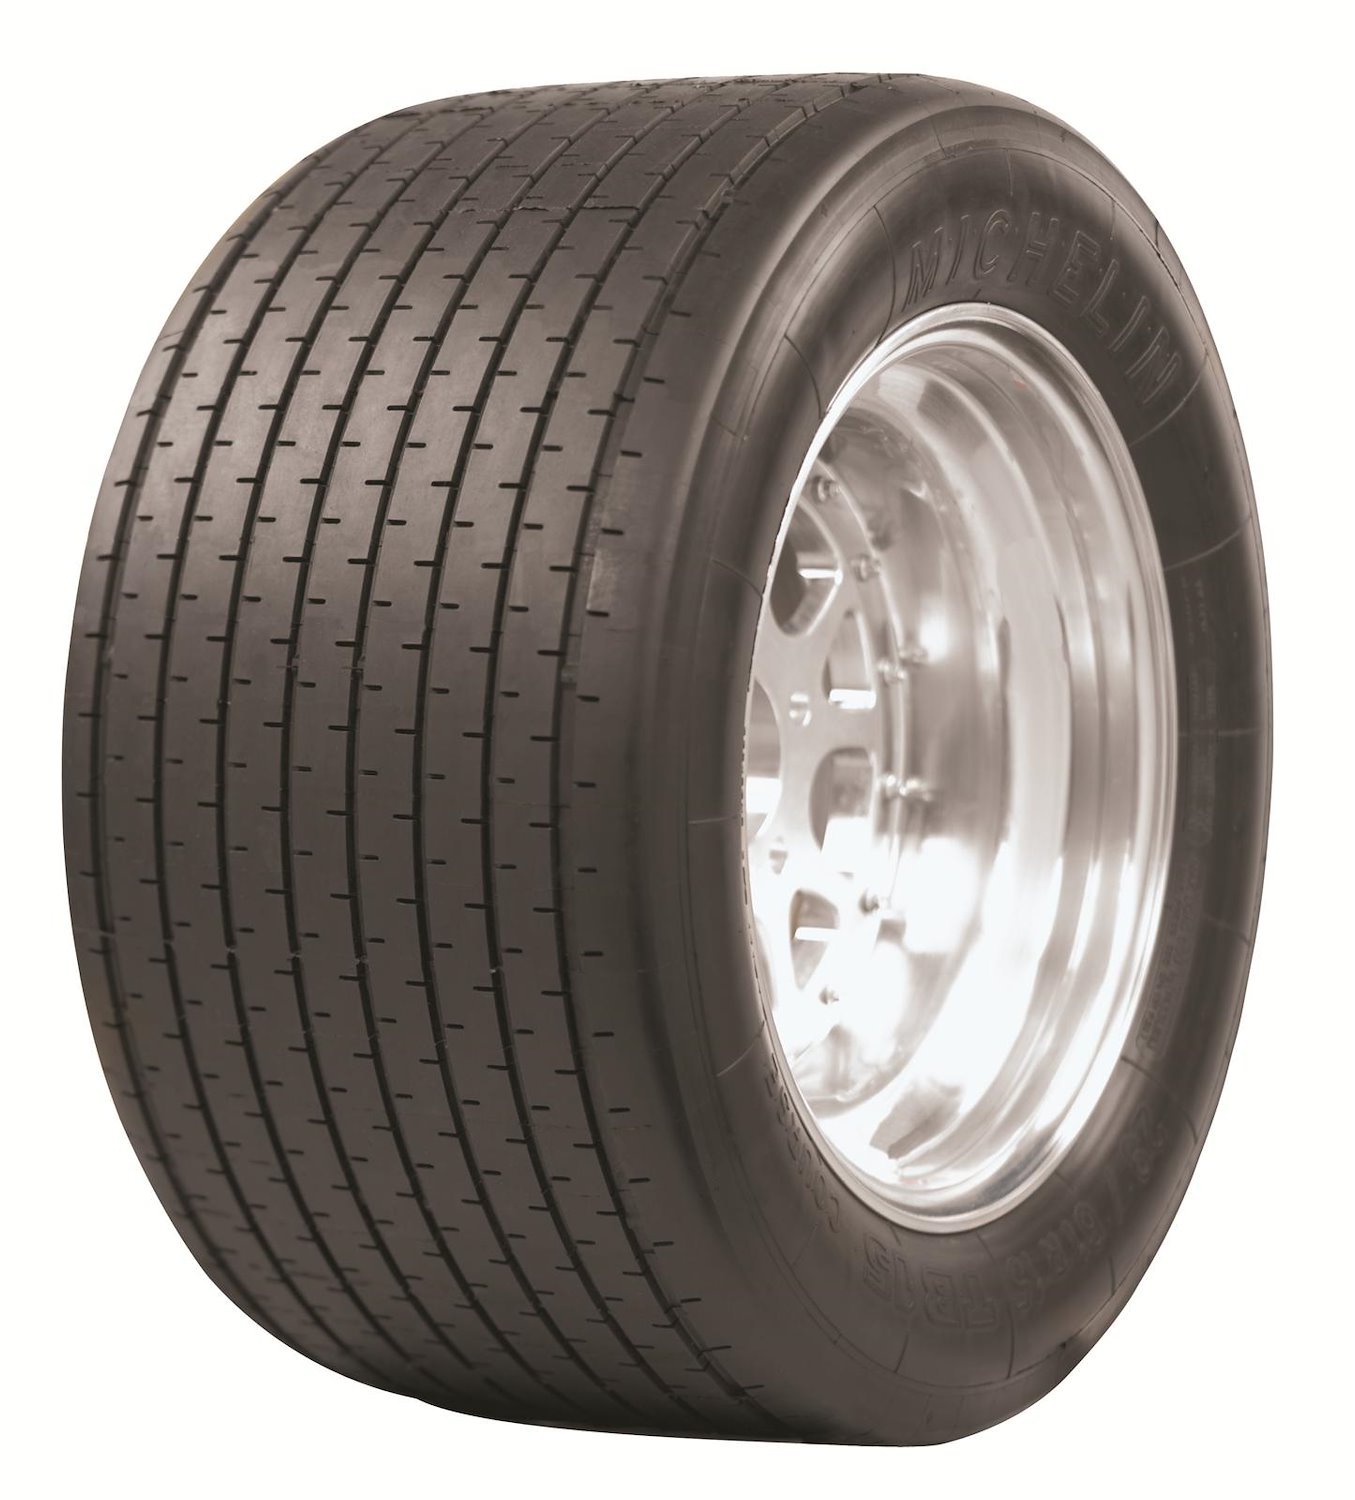 Michelin TB15 Tire, 20/53-13